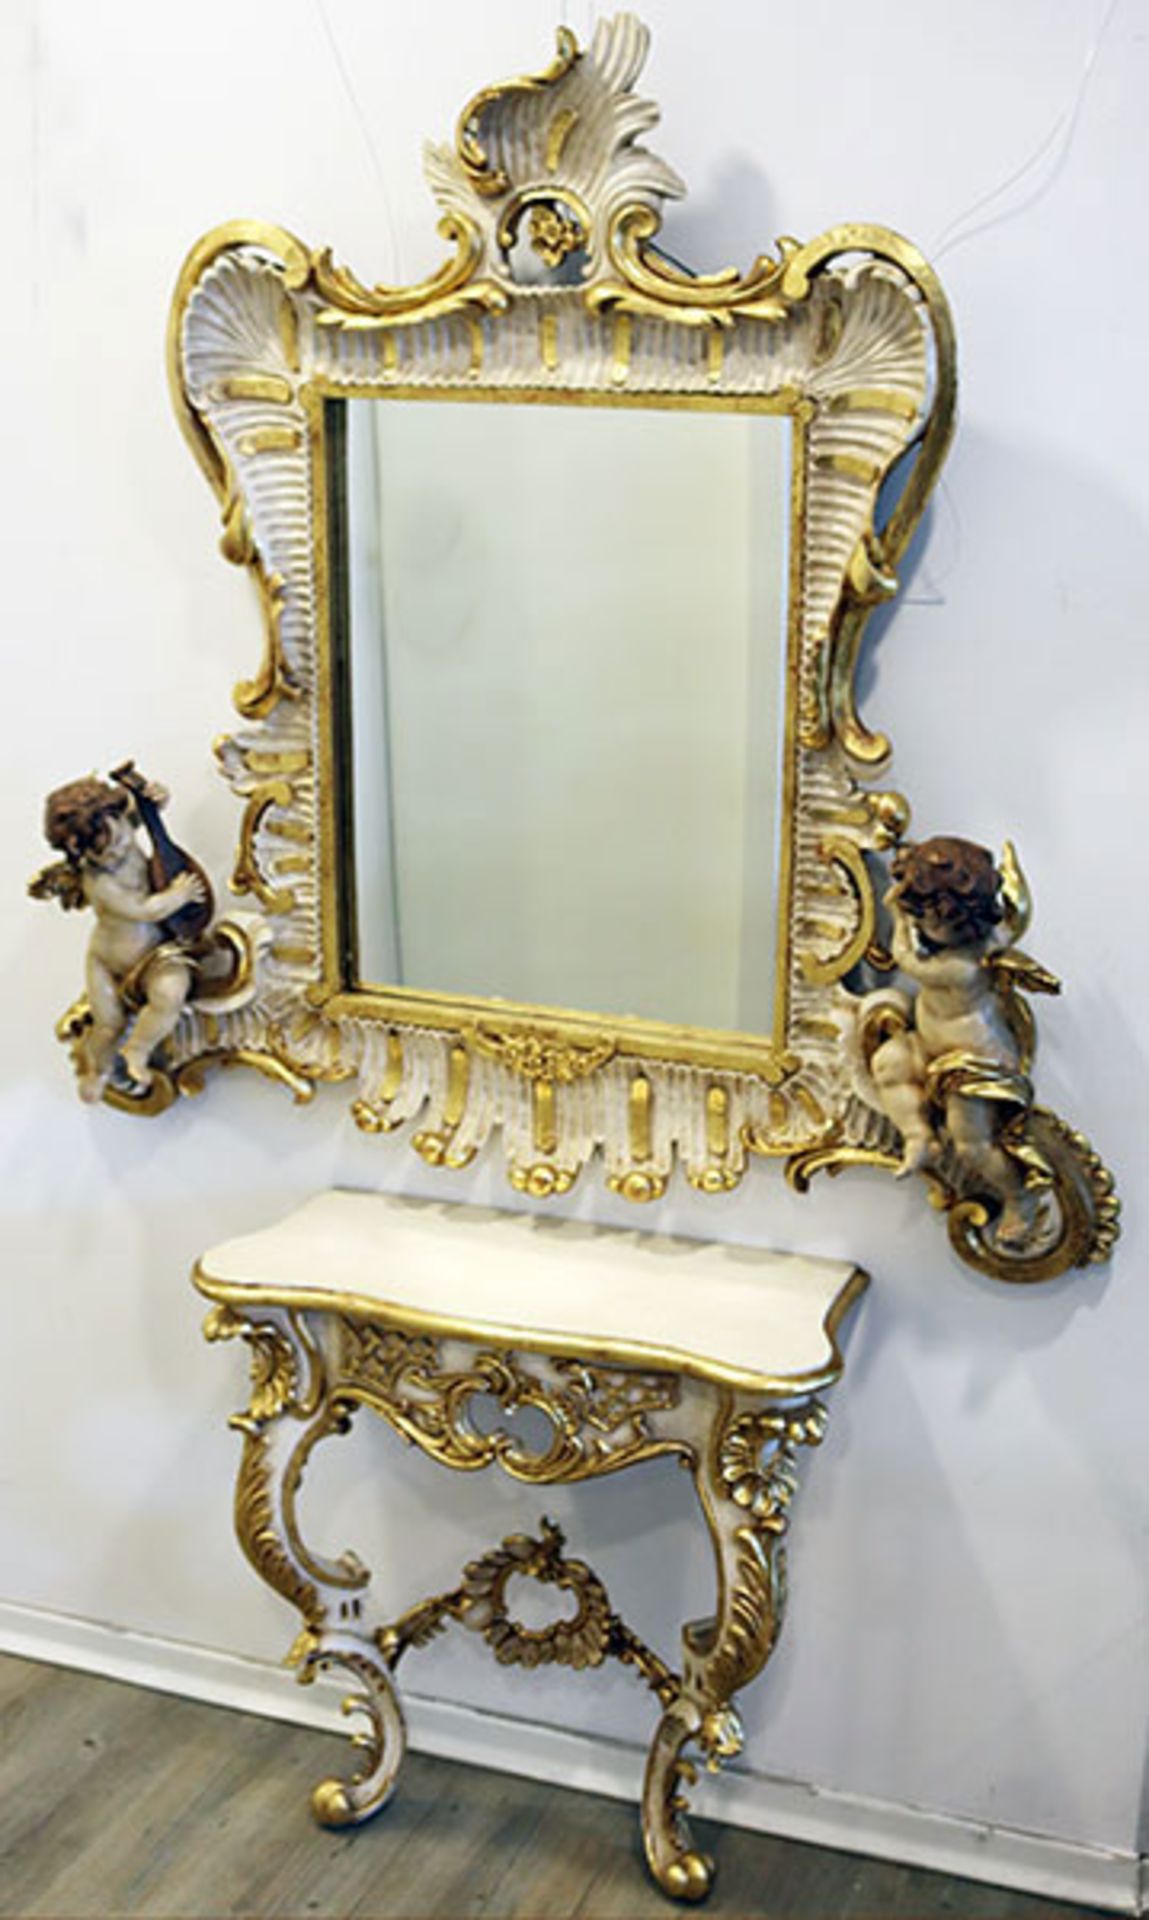 Wandtisch-Spiegel-Garnitur: Wandtisch mit 2 geschwungenen Beinen, beschnitzt und beige/gold